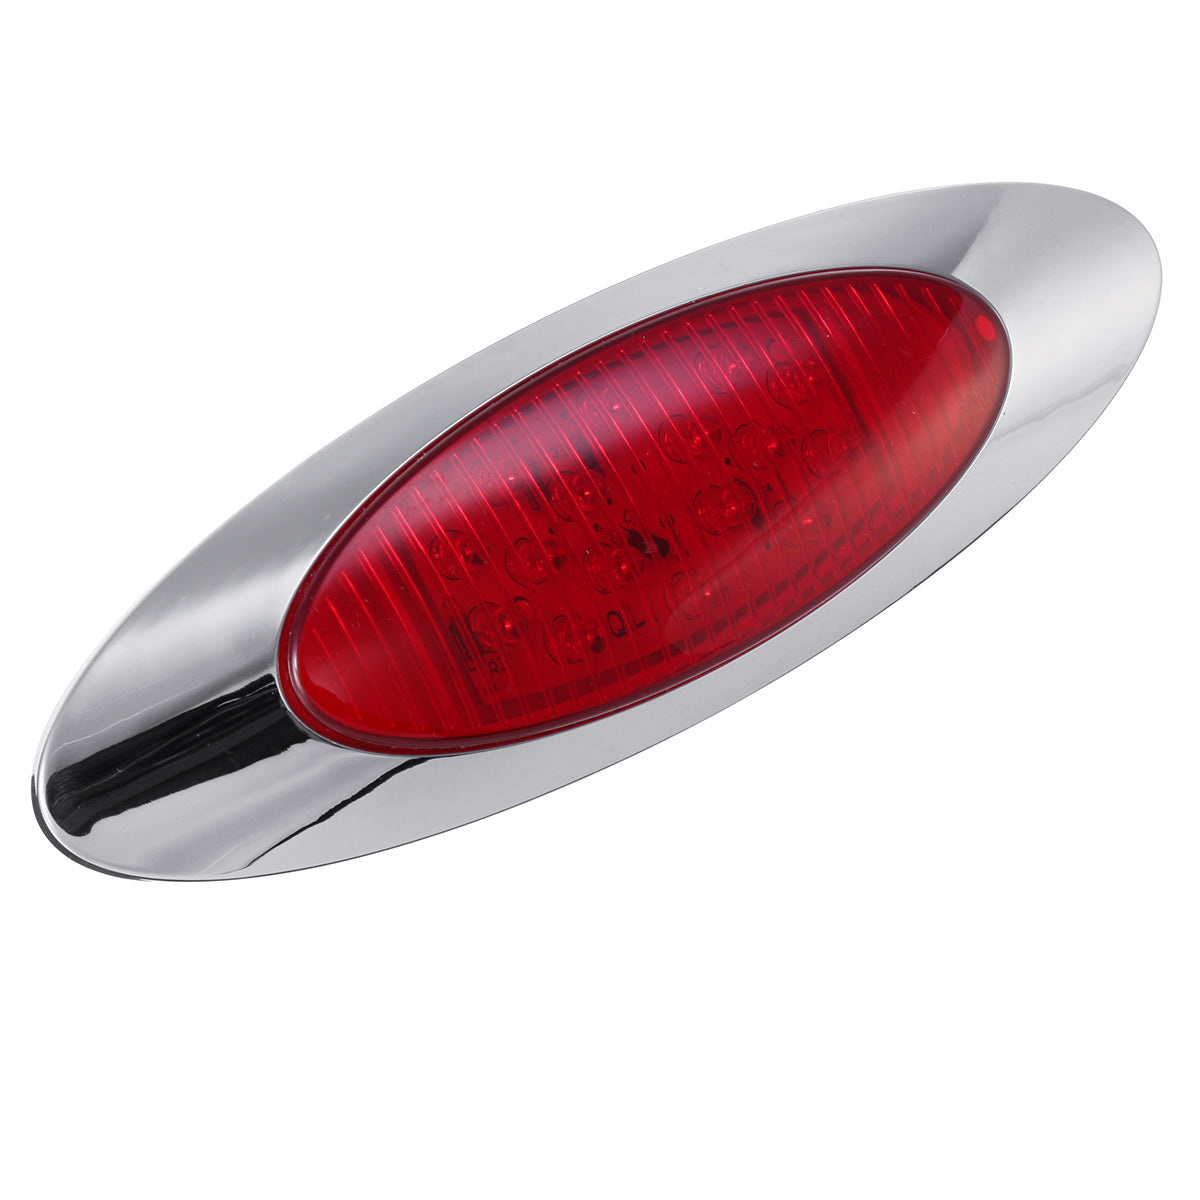 Dark Red 12V 6.5 Inch Oval Cab Side Marker Lights 16 LED Bezel For Truck Marine Boat